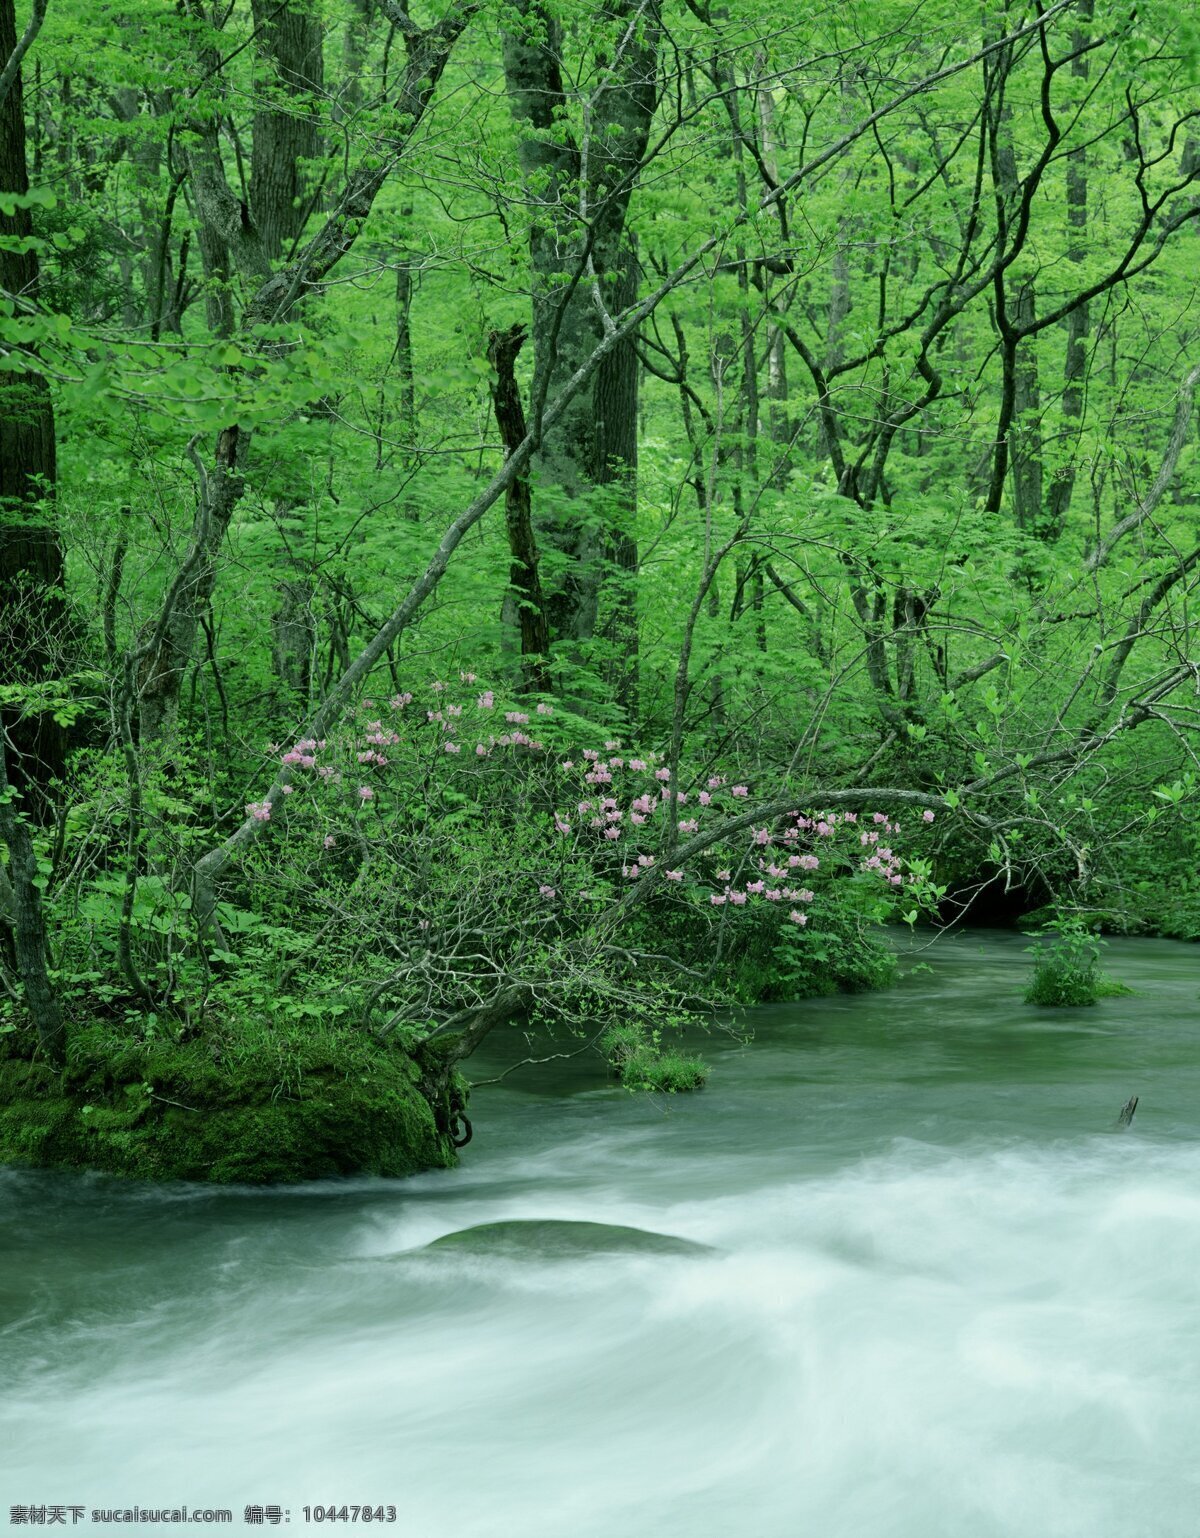 醉美自然美景 绿色 树木 美景 河流 陶醉 多娇江山 自然景观 自然风景